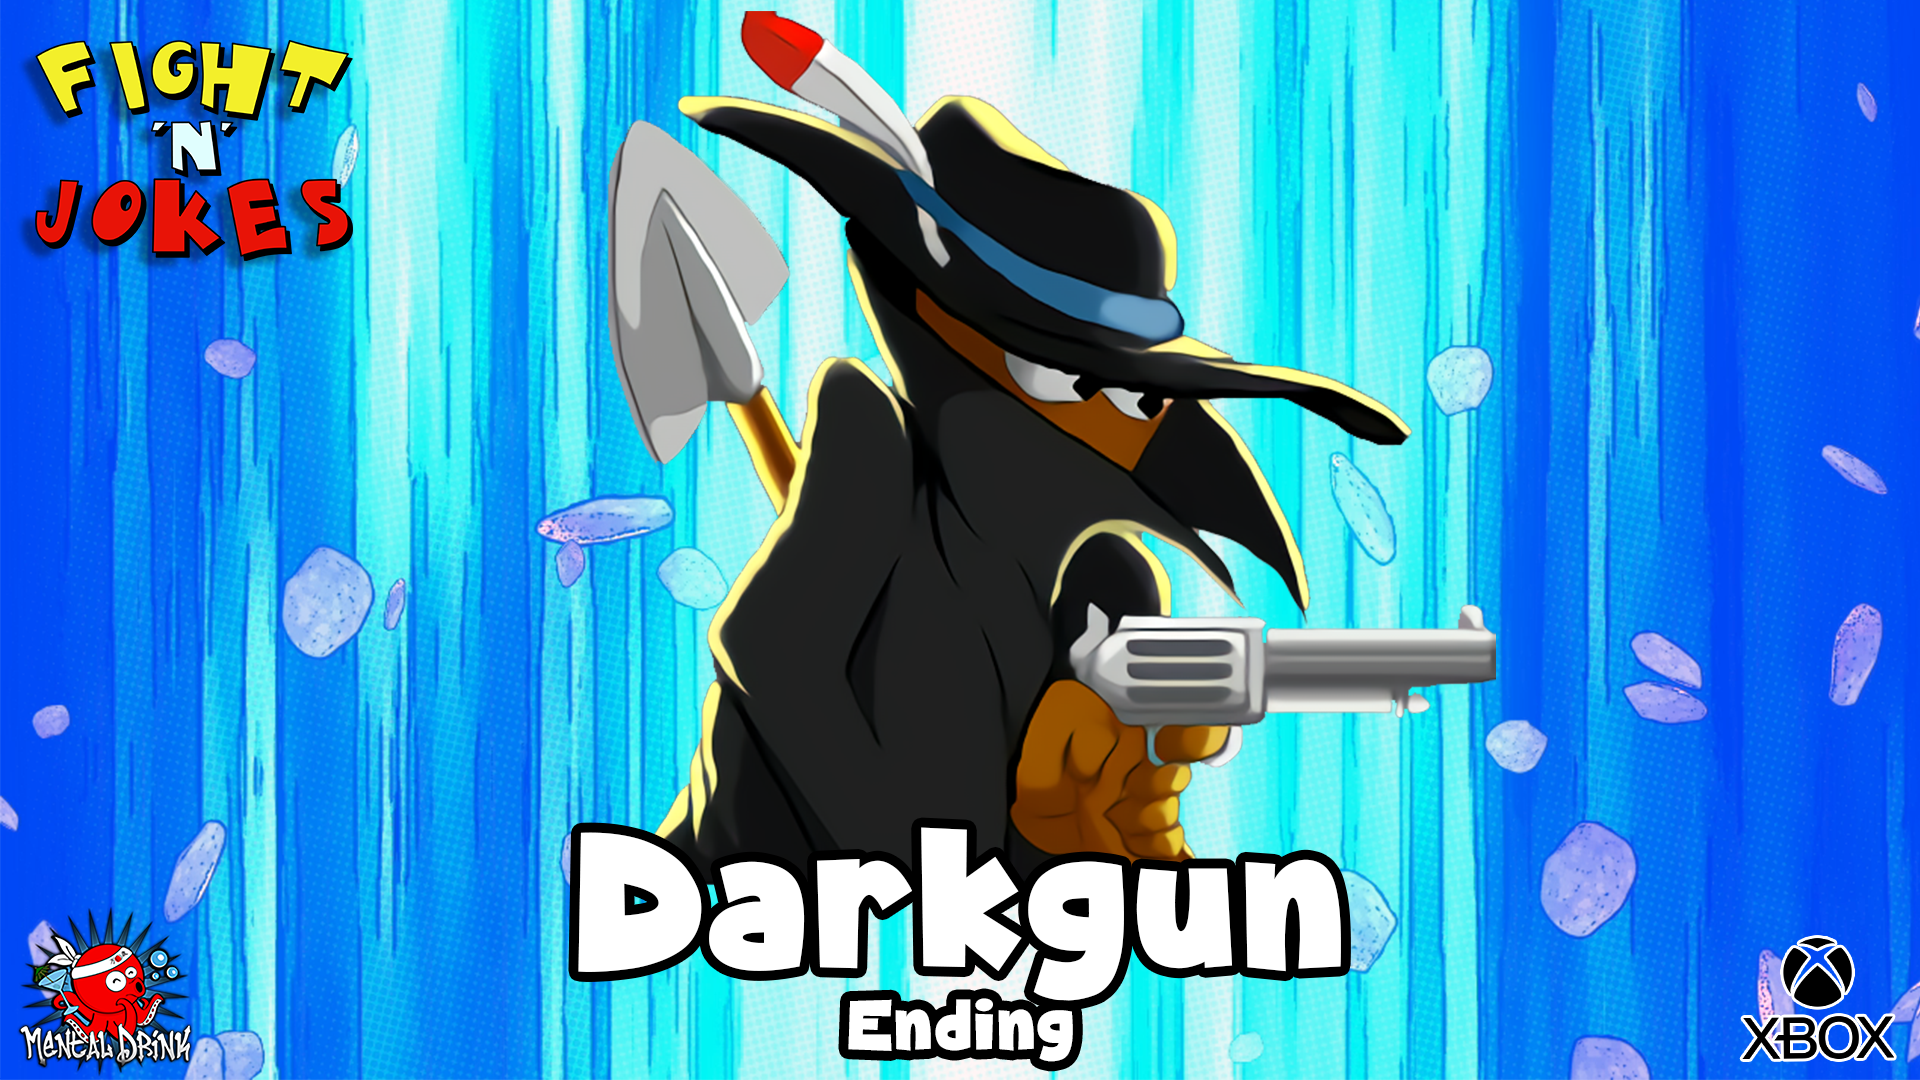 Icon for Ending - Darkgun